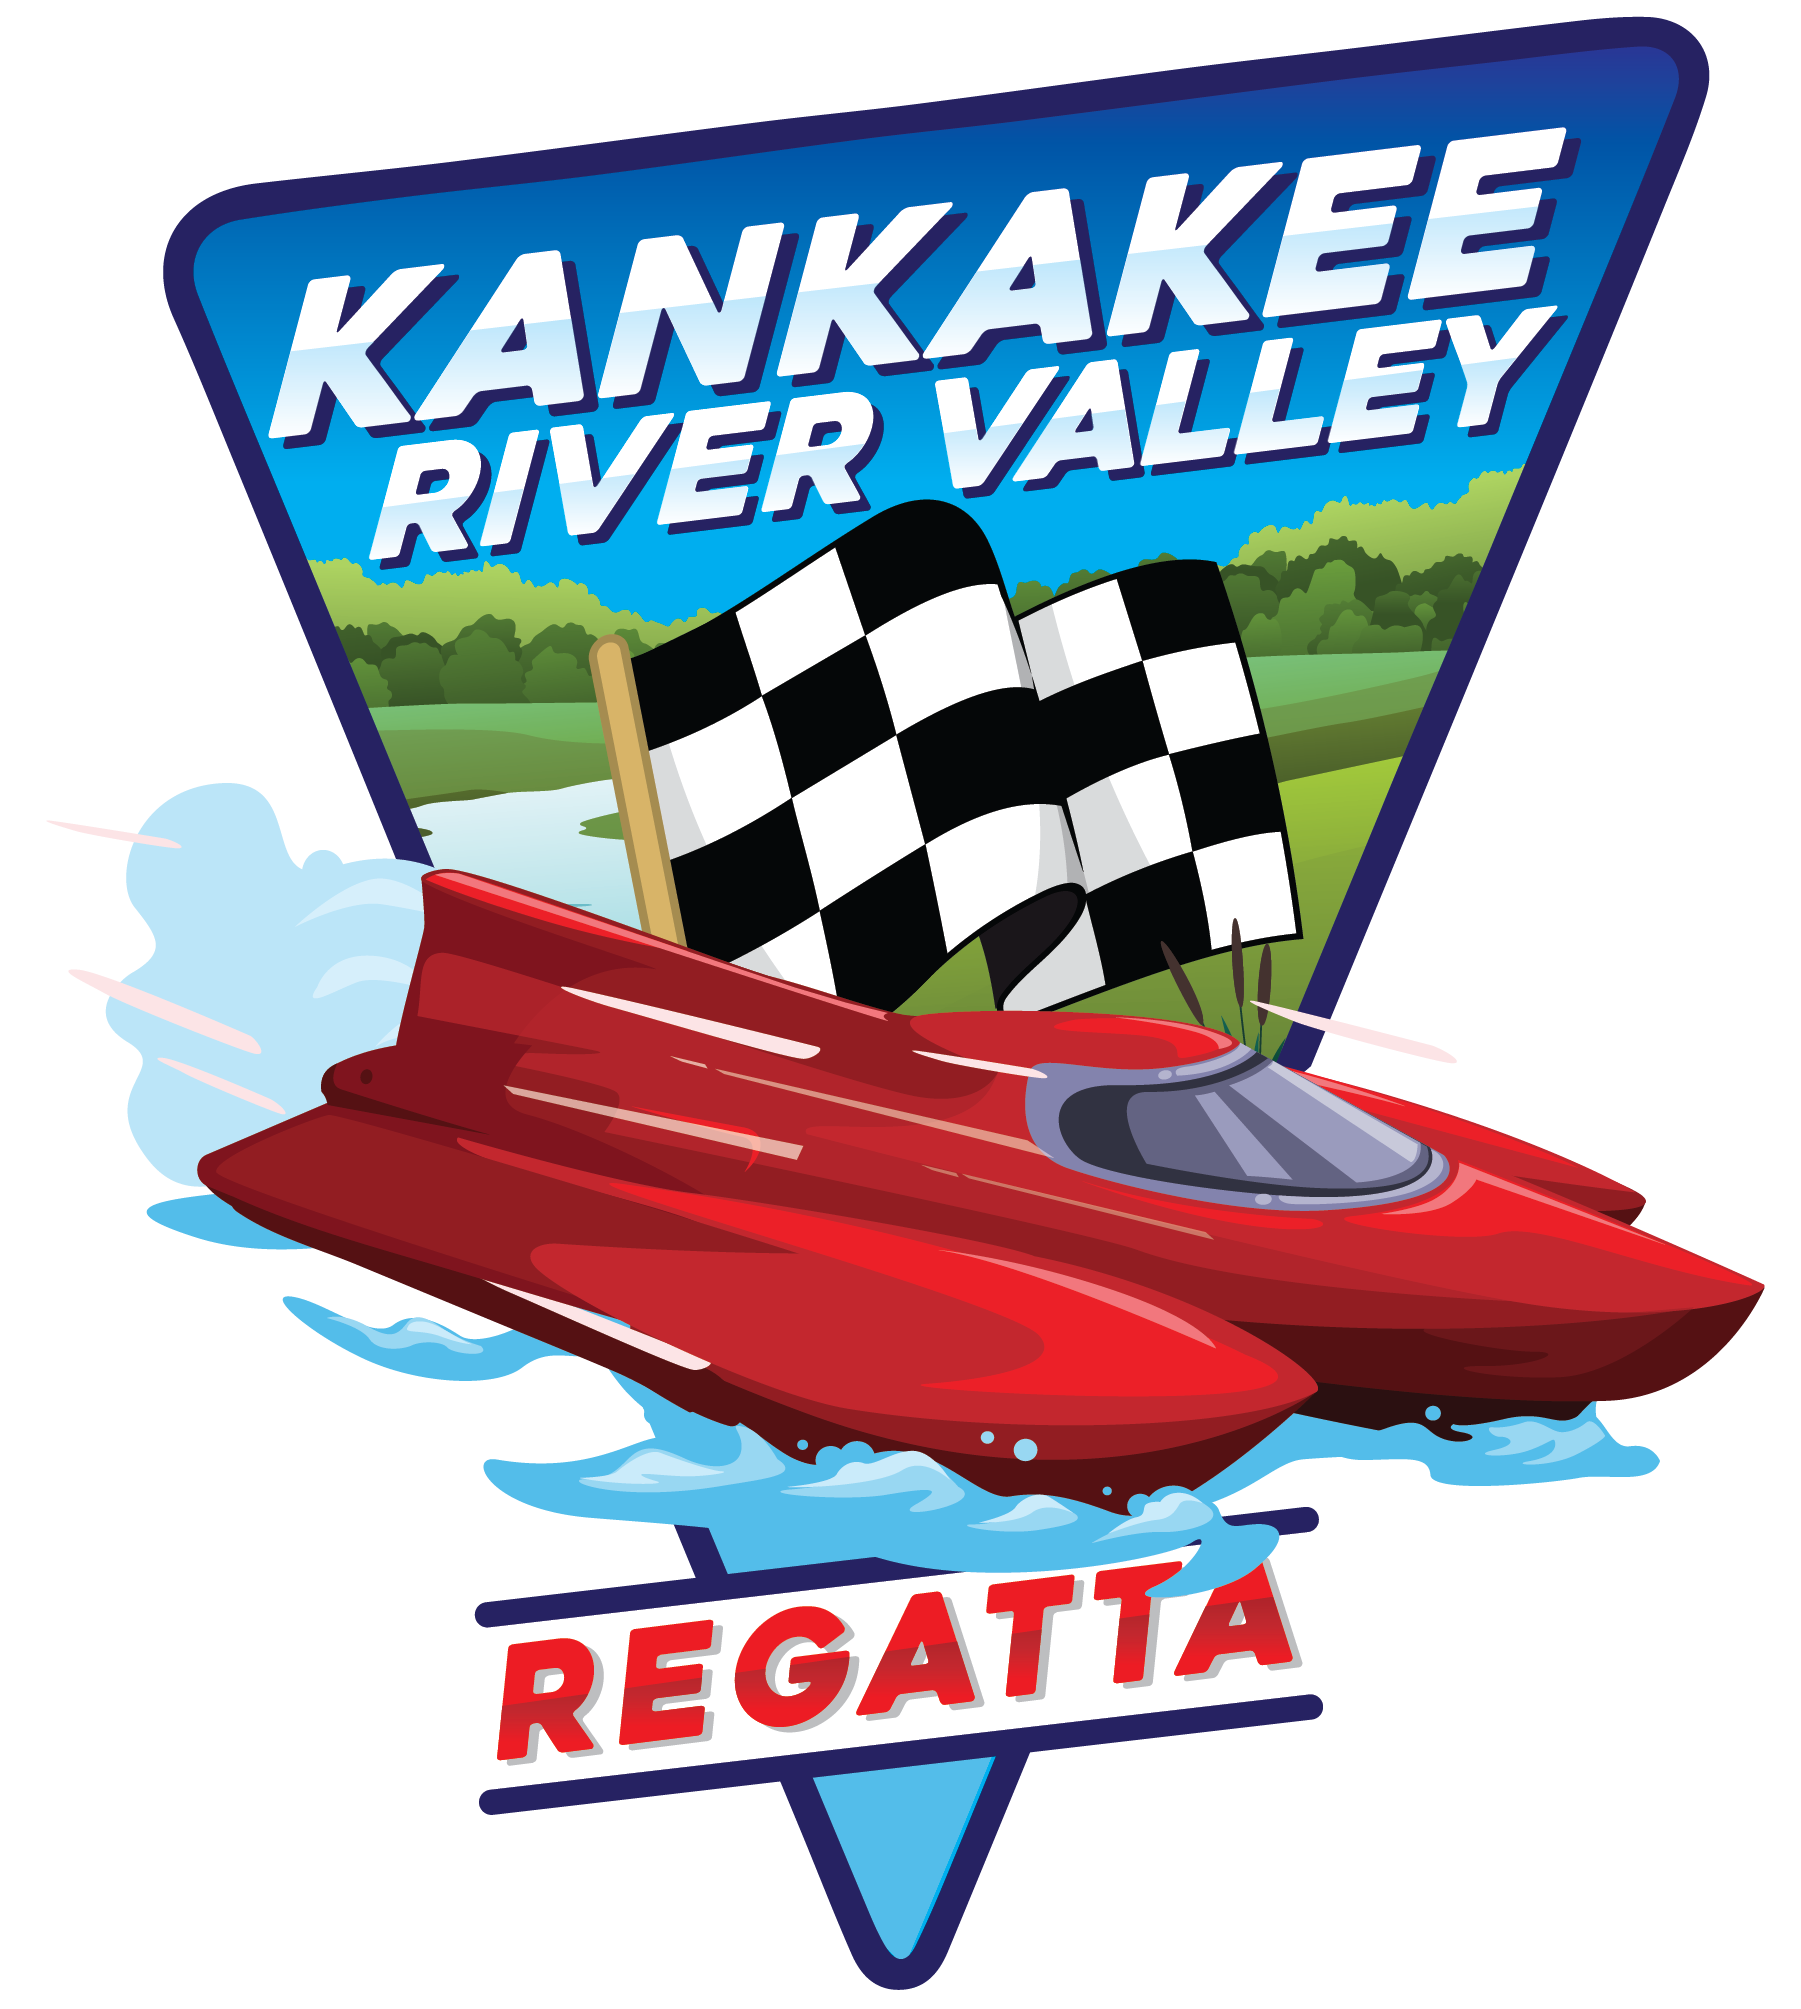 Kankakee River Valley Regatta